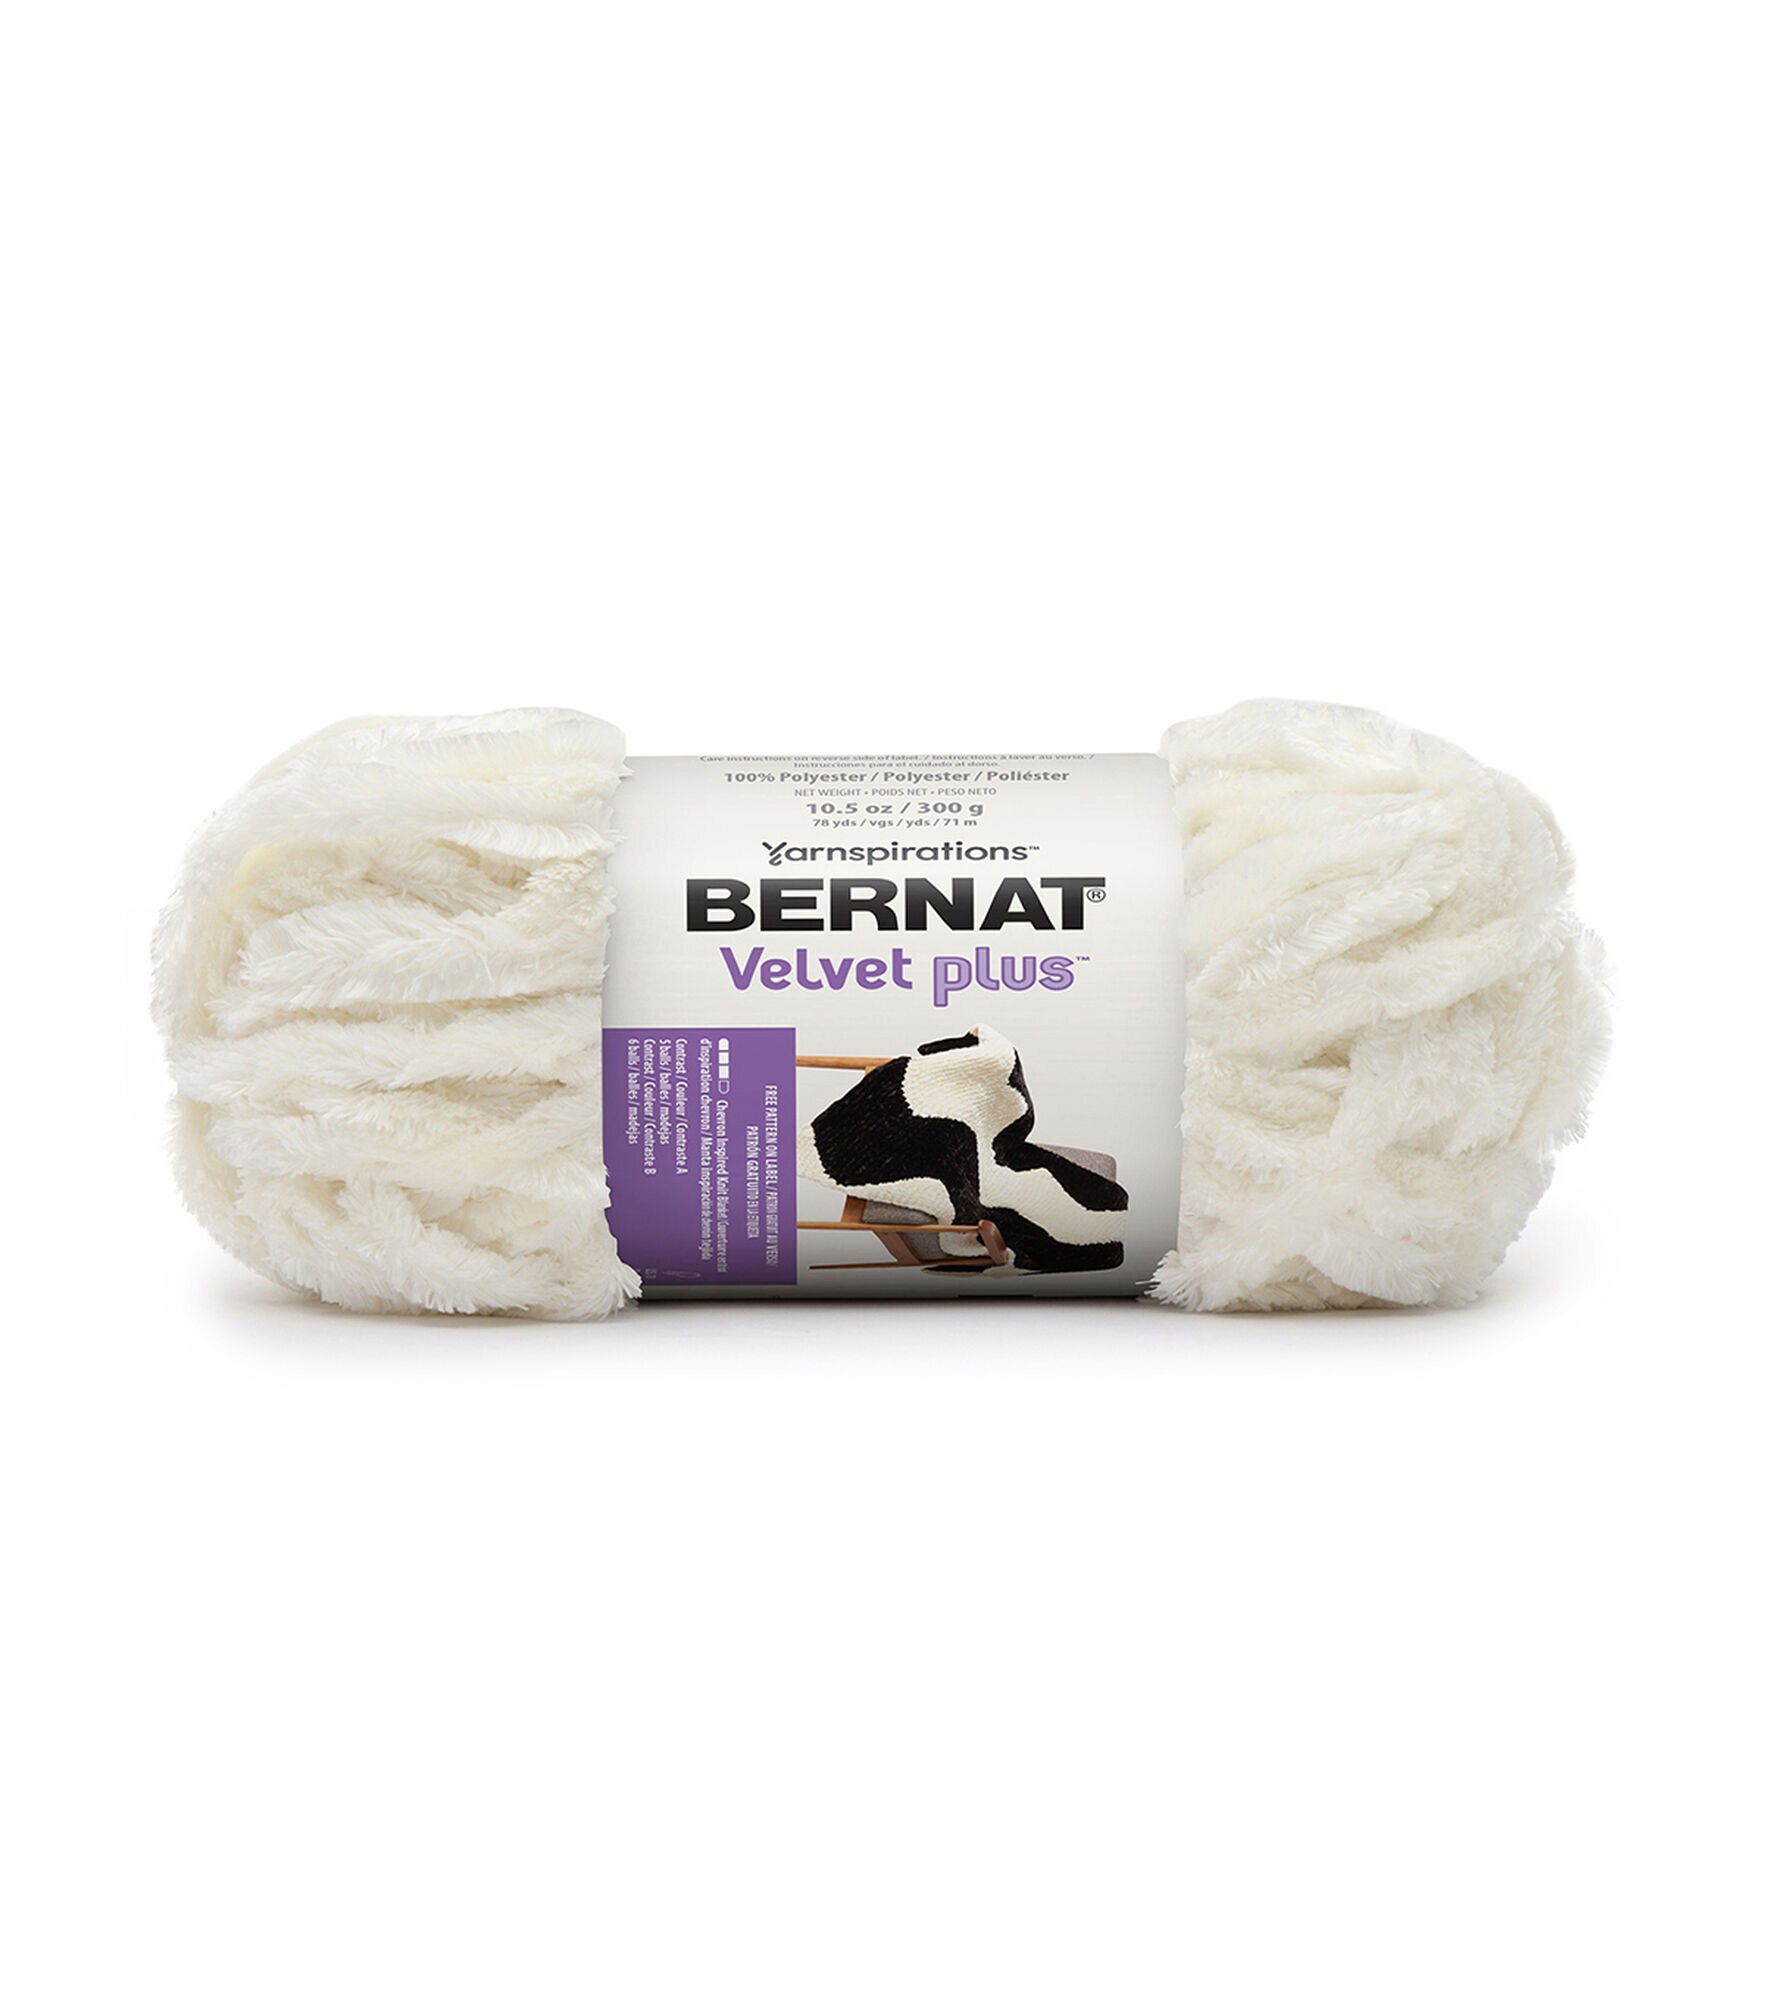 Bernat Velvet Plus Vapor Gray Yarn - 2 Pack of 300g/10.5oz - Polyester - 6 Super Bulky - Knitting/Crochet